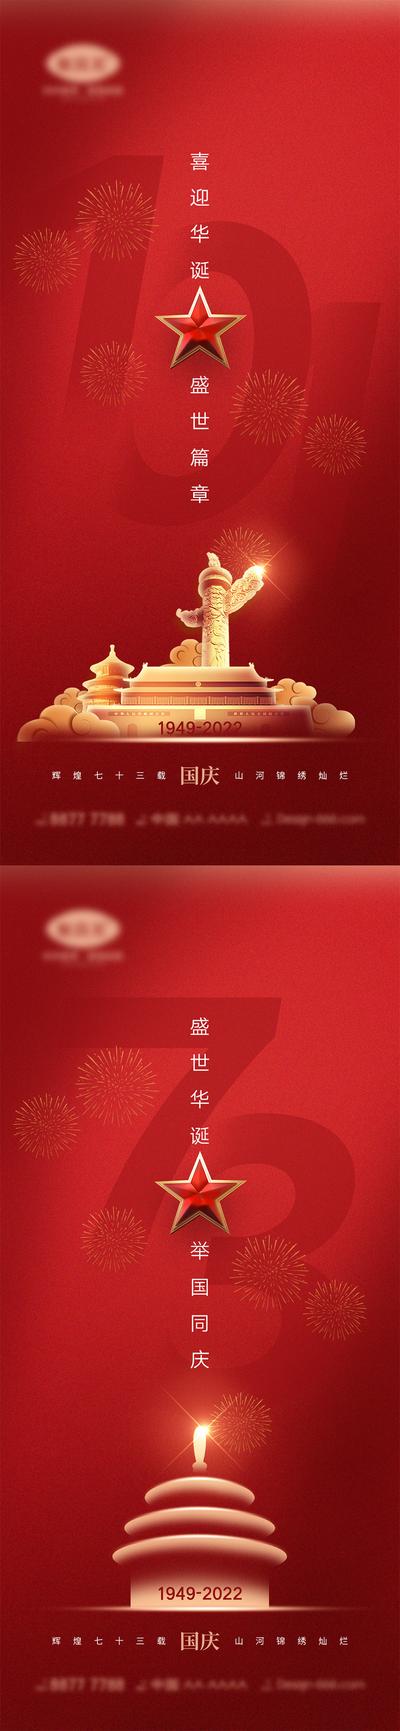 南门网 广告 海报 公立节日 国庆节 十一 盛世华诞 举国同庆 天安门 中国红 73周年 系列